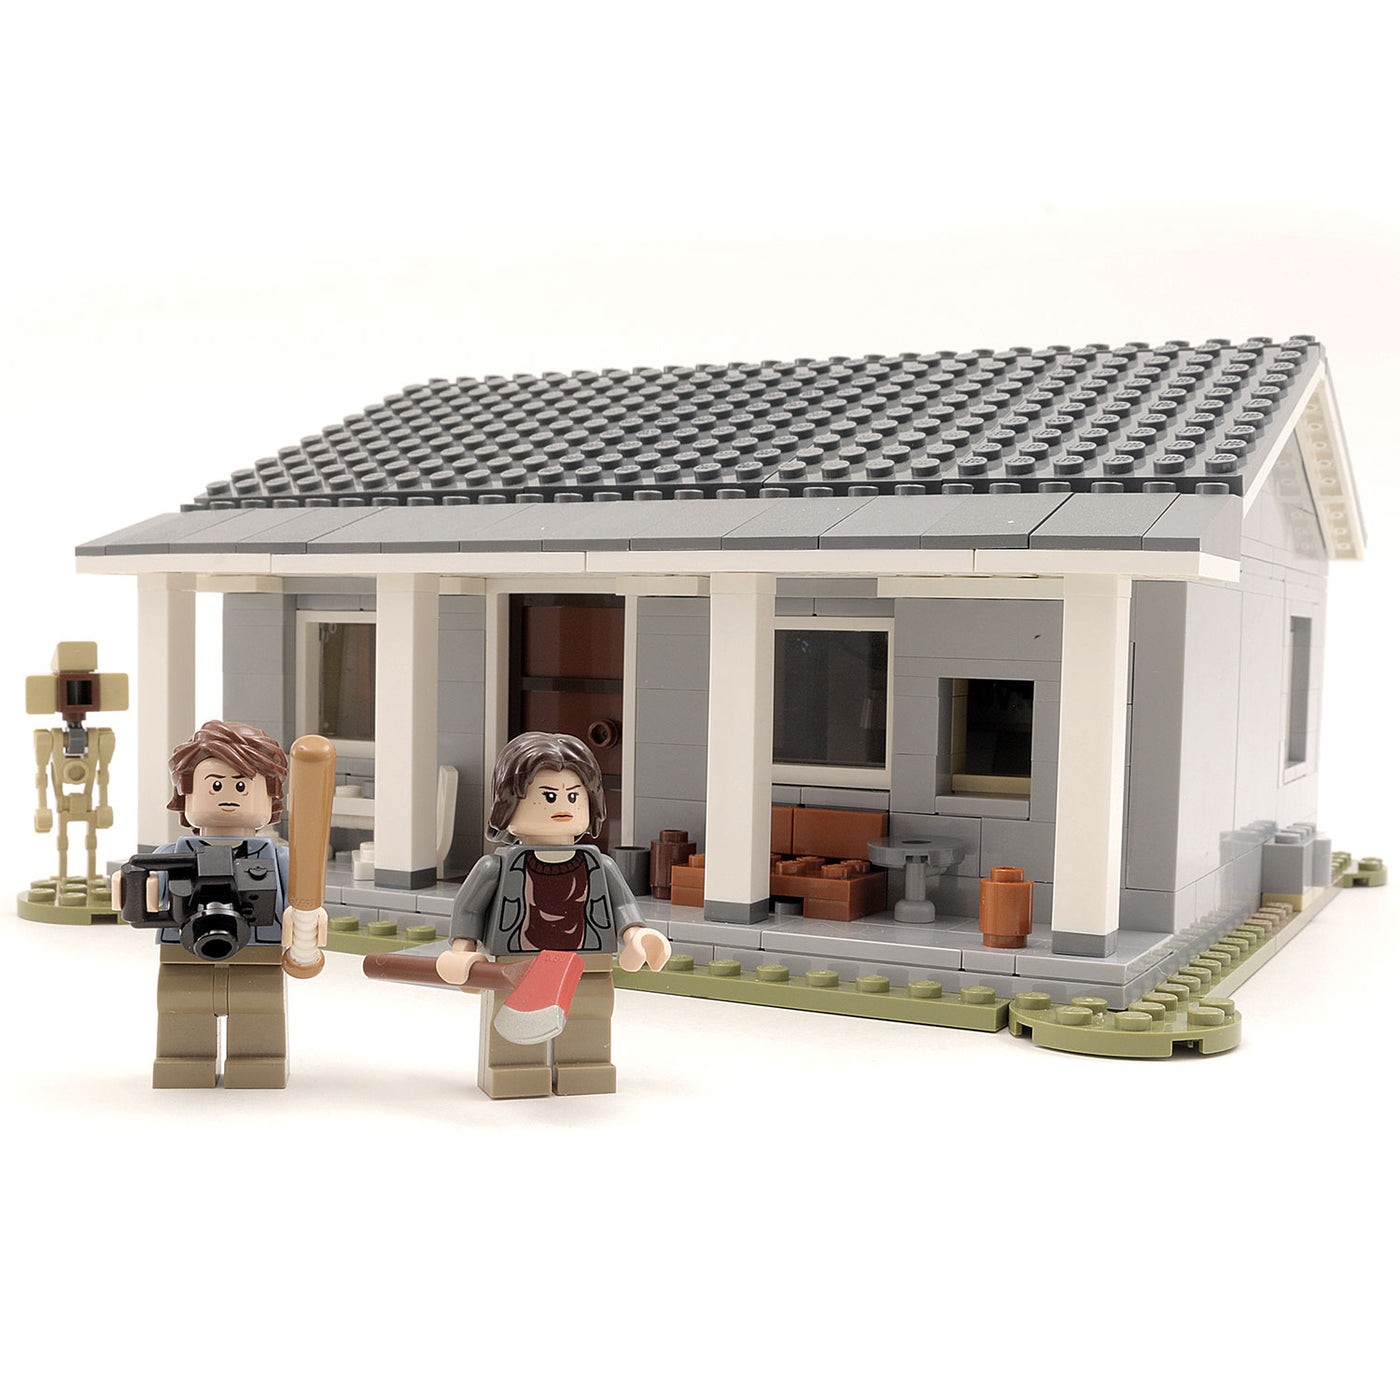 rytme belønning Eksperiment Instructions for Custom LEGO Stranger Things Byer's House – B3 Customs